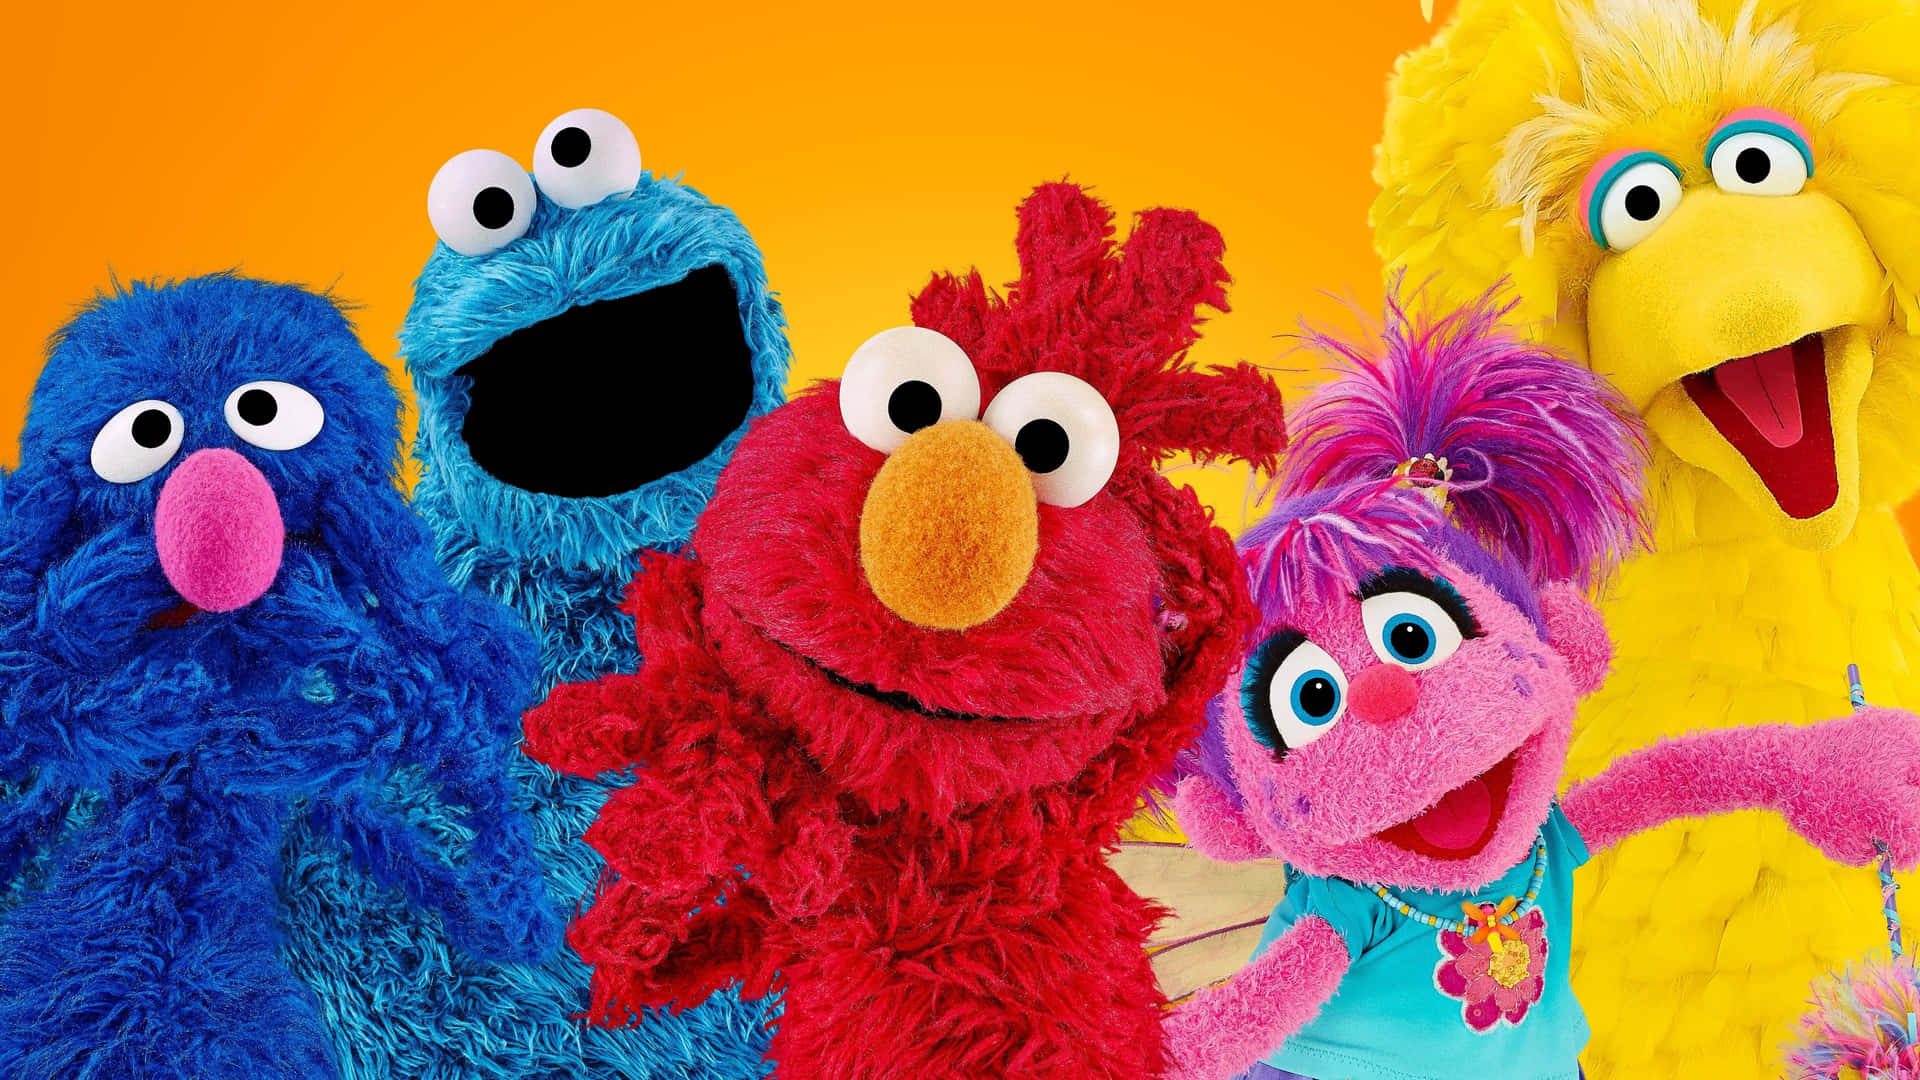 Todosos Seus Personagens Favoritos Da Sesame Street Se Reúnem Em Um Só Lugar!